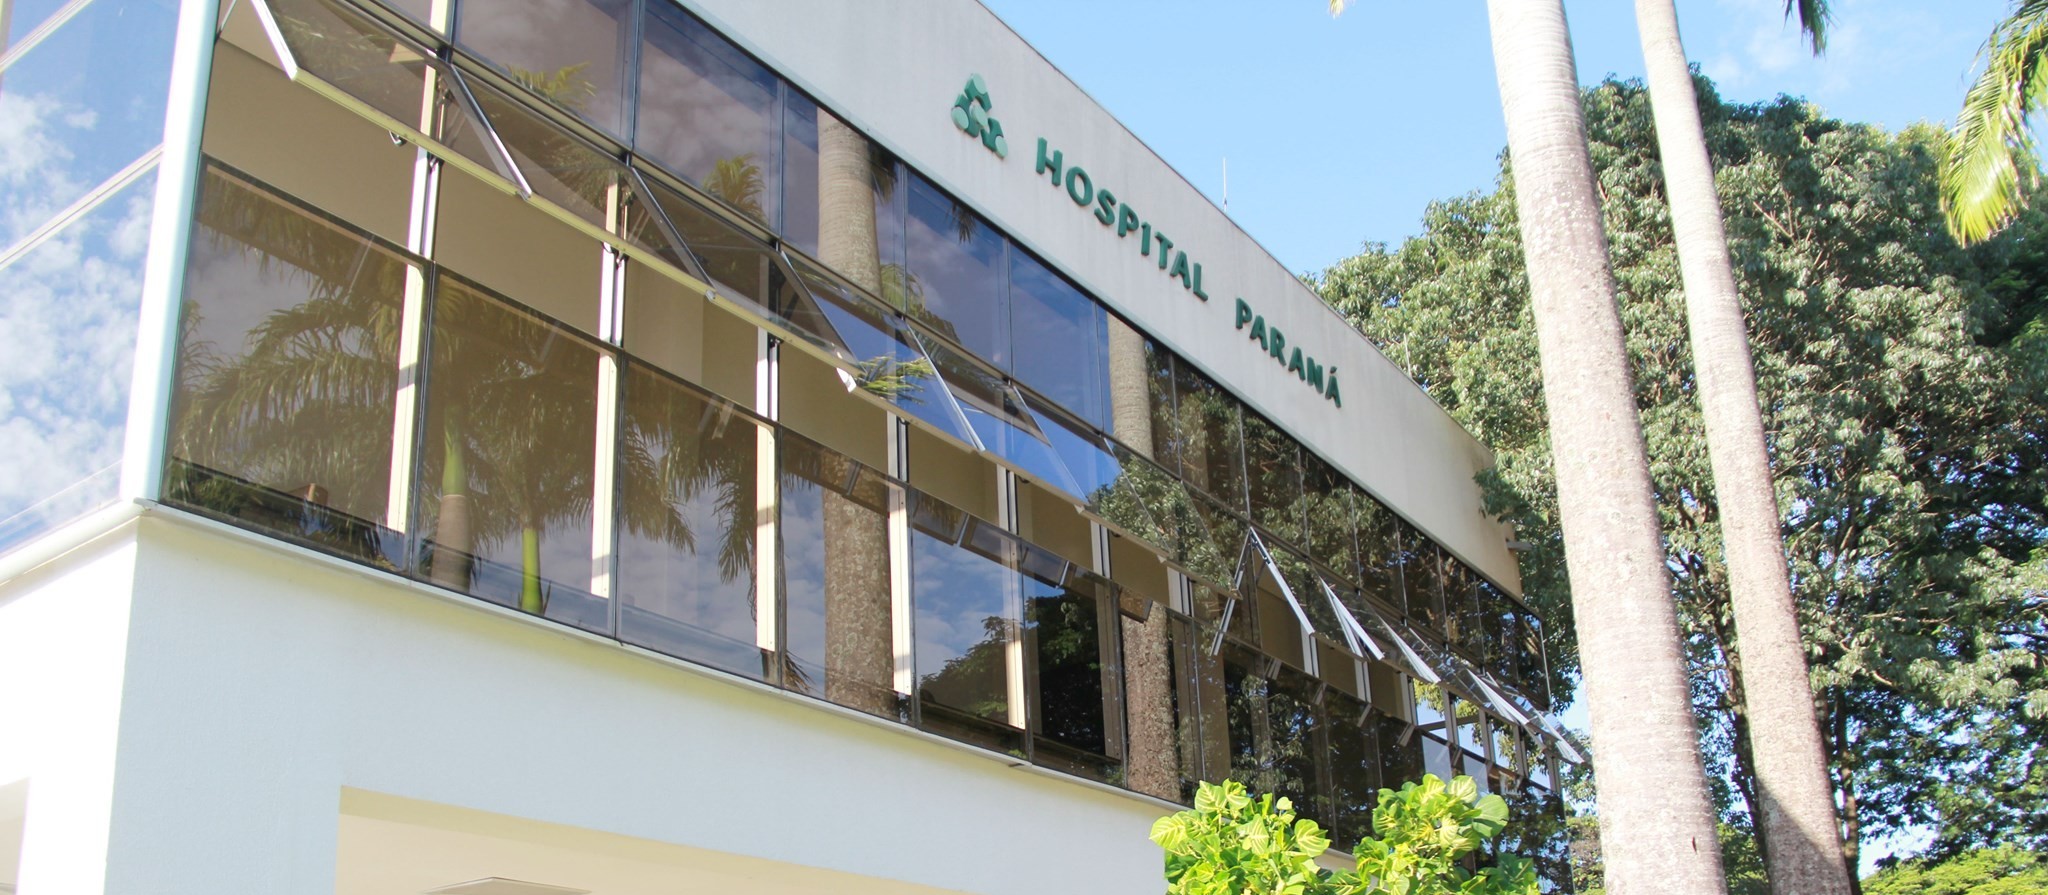 Hospital Paraná recebeu empréstimo de medicamentos e fez nova compra